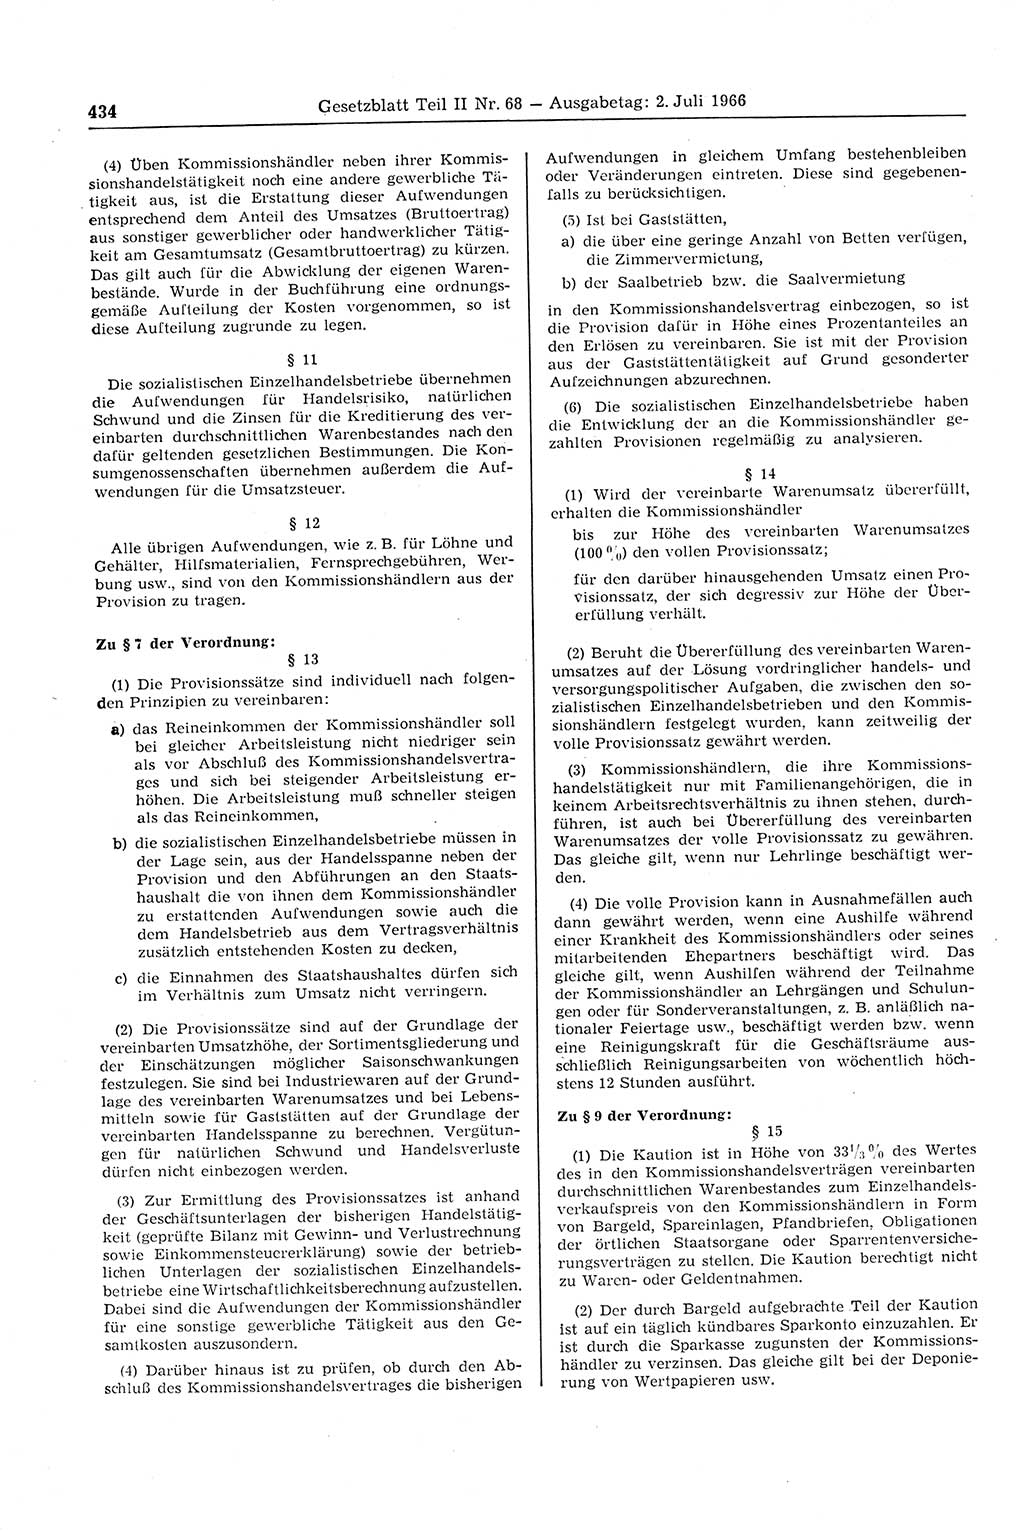 Gesetzblatt (GBl.) der Deutschen Demokratischen Republik (DDR) Teil ⅠⅠ 1966, Seite 434 (GBl. DDR ⅠⅠ 1966, S. 434)